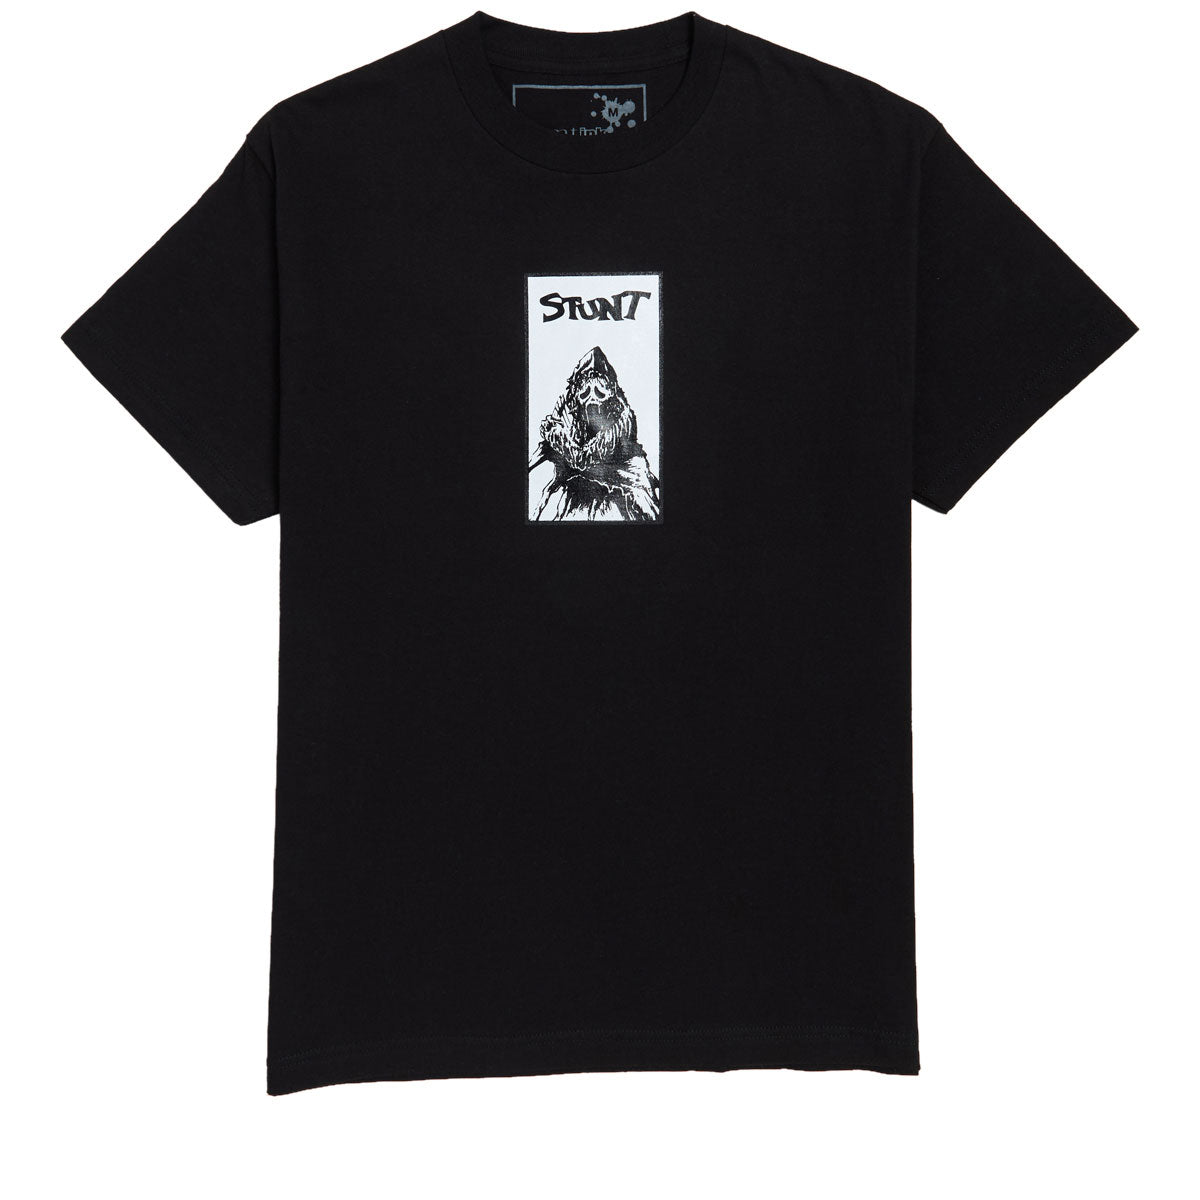 Stunt Ripper T-Shirt - Black image 1